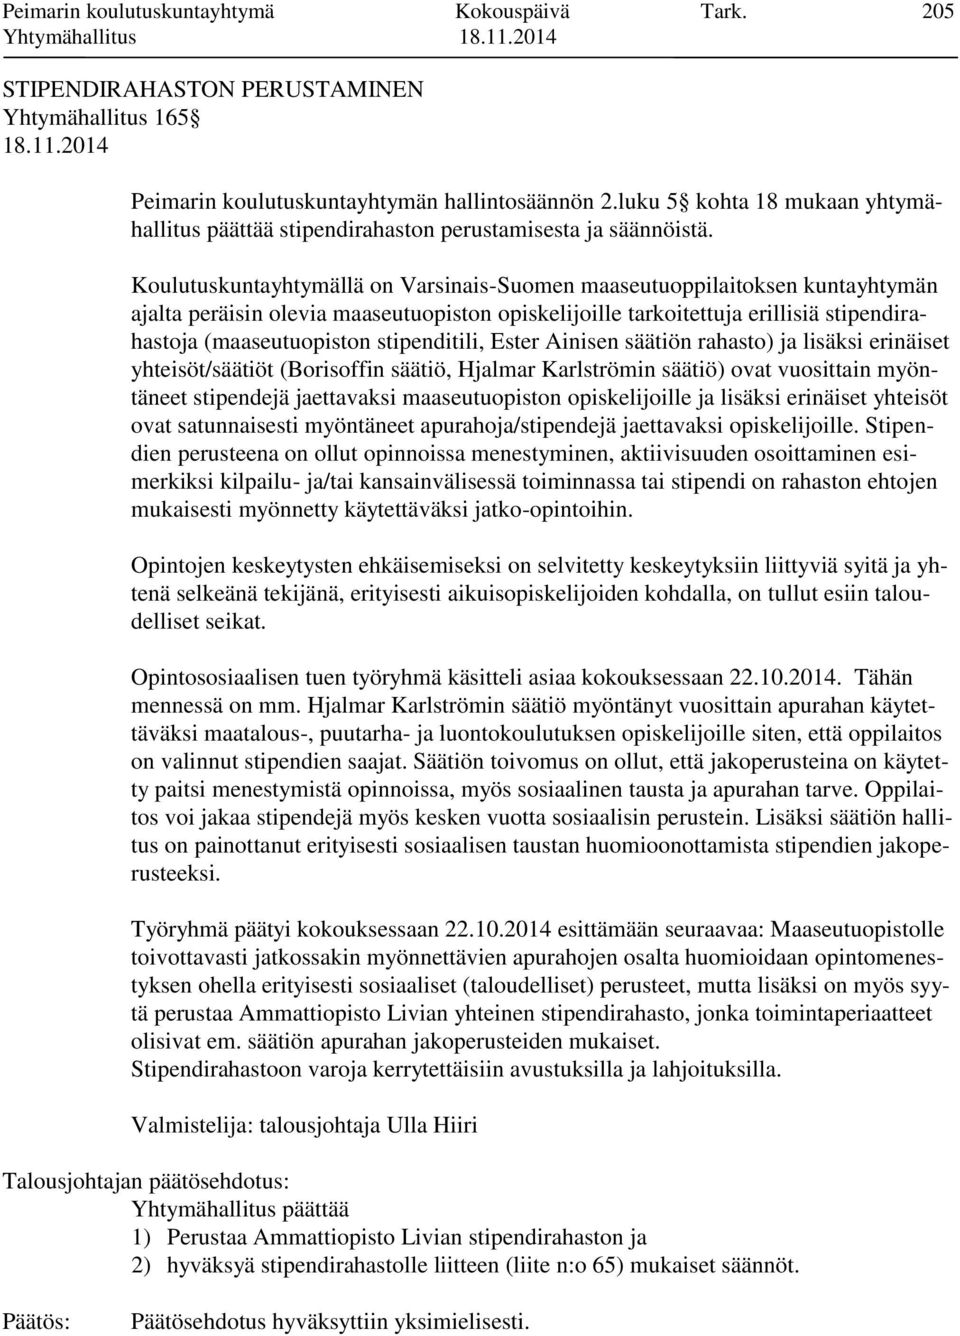 Koulutuskuntayhtymällä on Varsinais-Suomen maaseutuoppilaitoksen kuntayhtymän ajalta peräisin olevia maaseutuopiston opiskelijoille tarkoitettuja erillisiä stipendirahastoja (maaseutuopiston